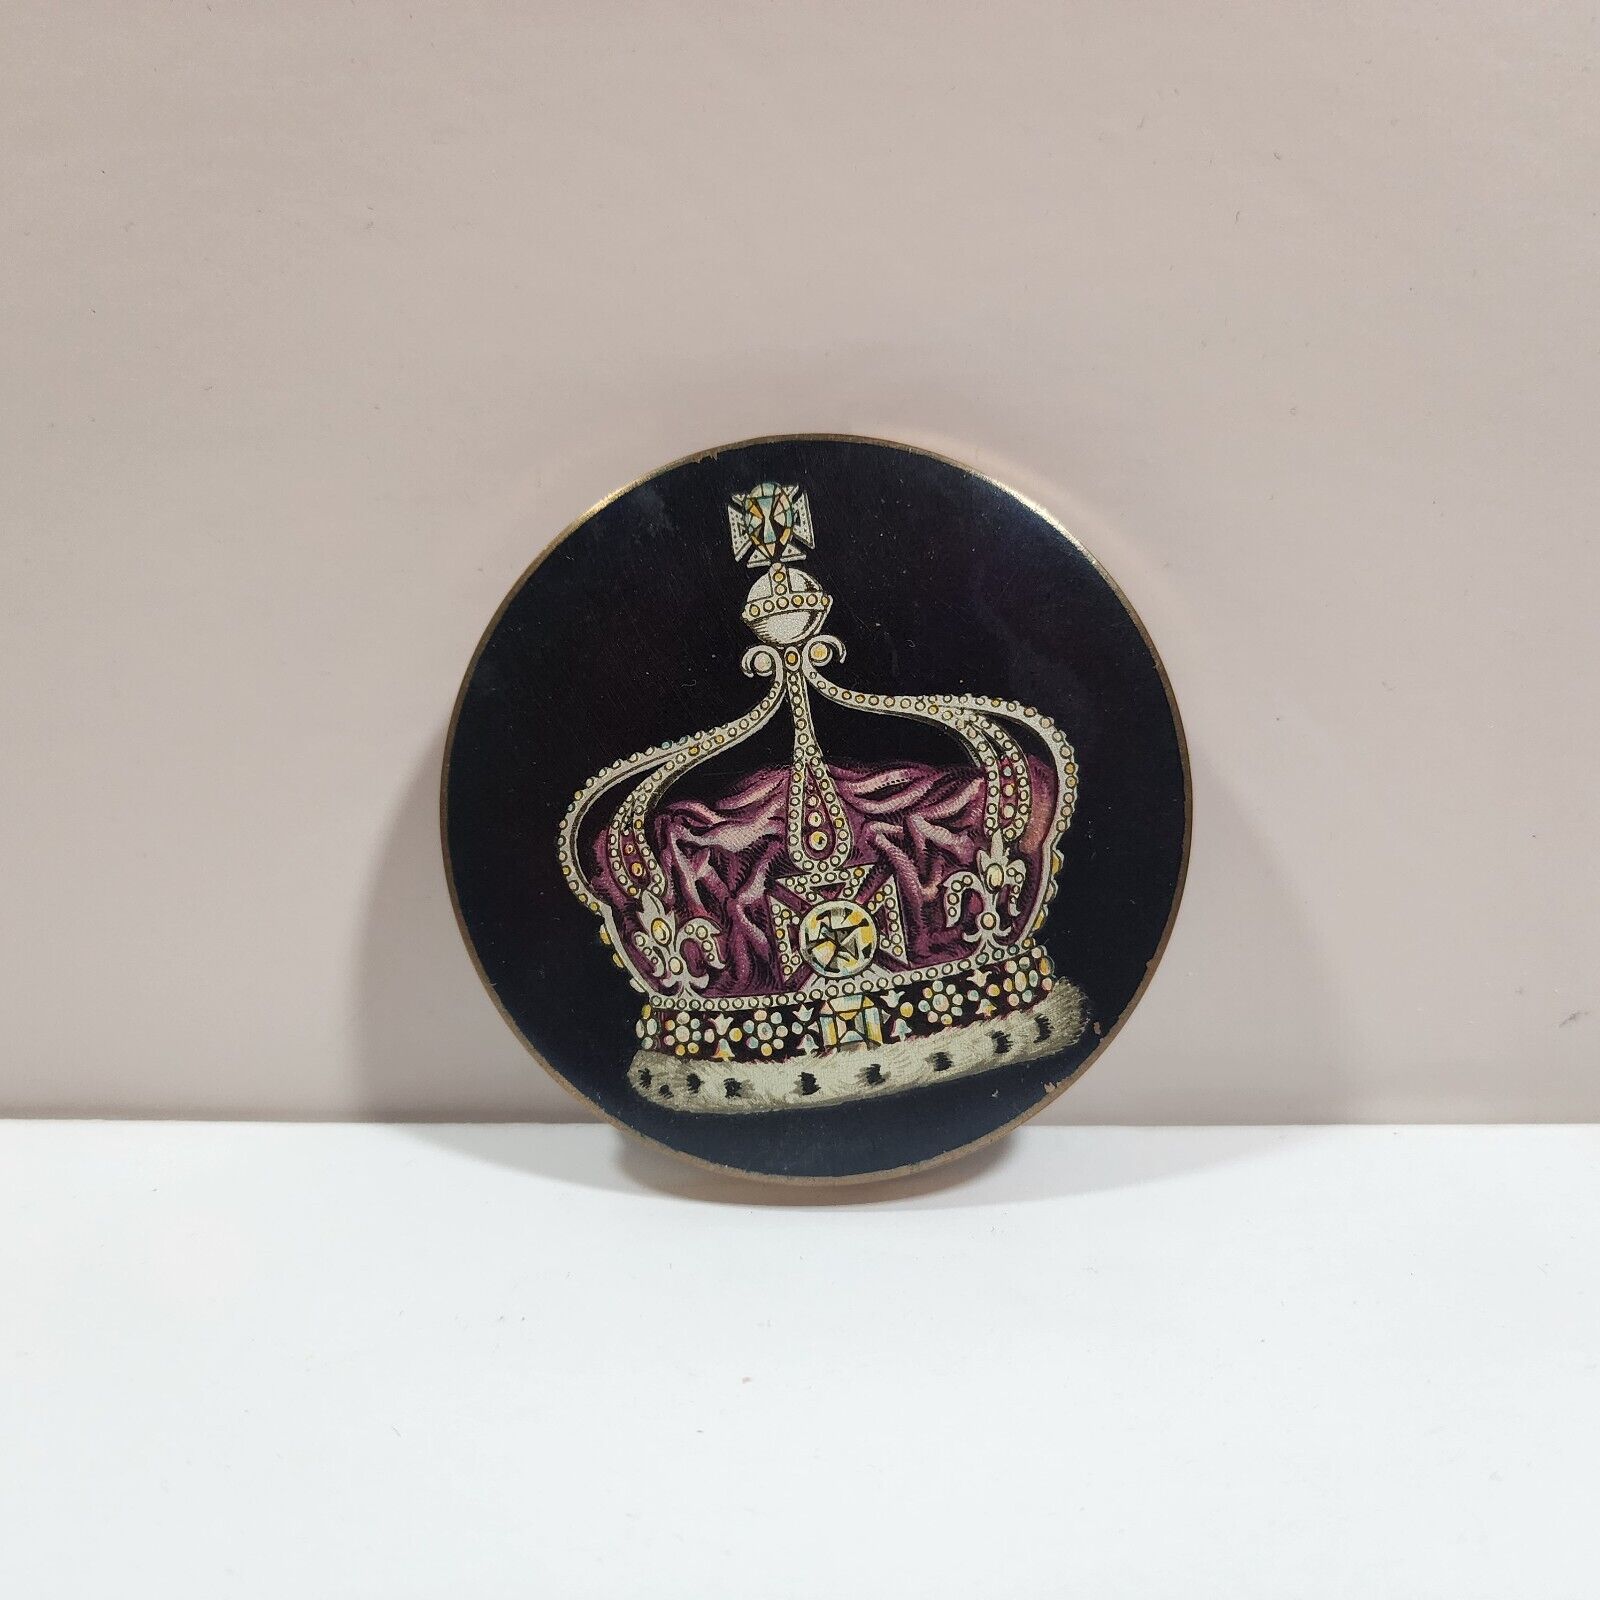 Vintage Stratton Queen Elizabeth II coronation Corona loose powder compact